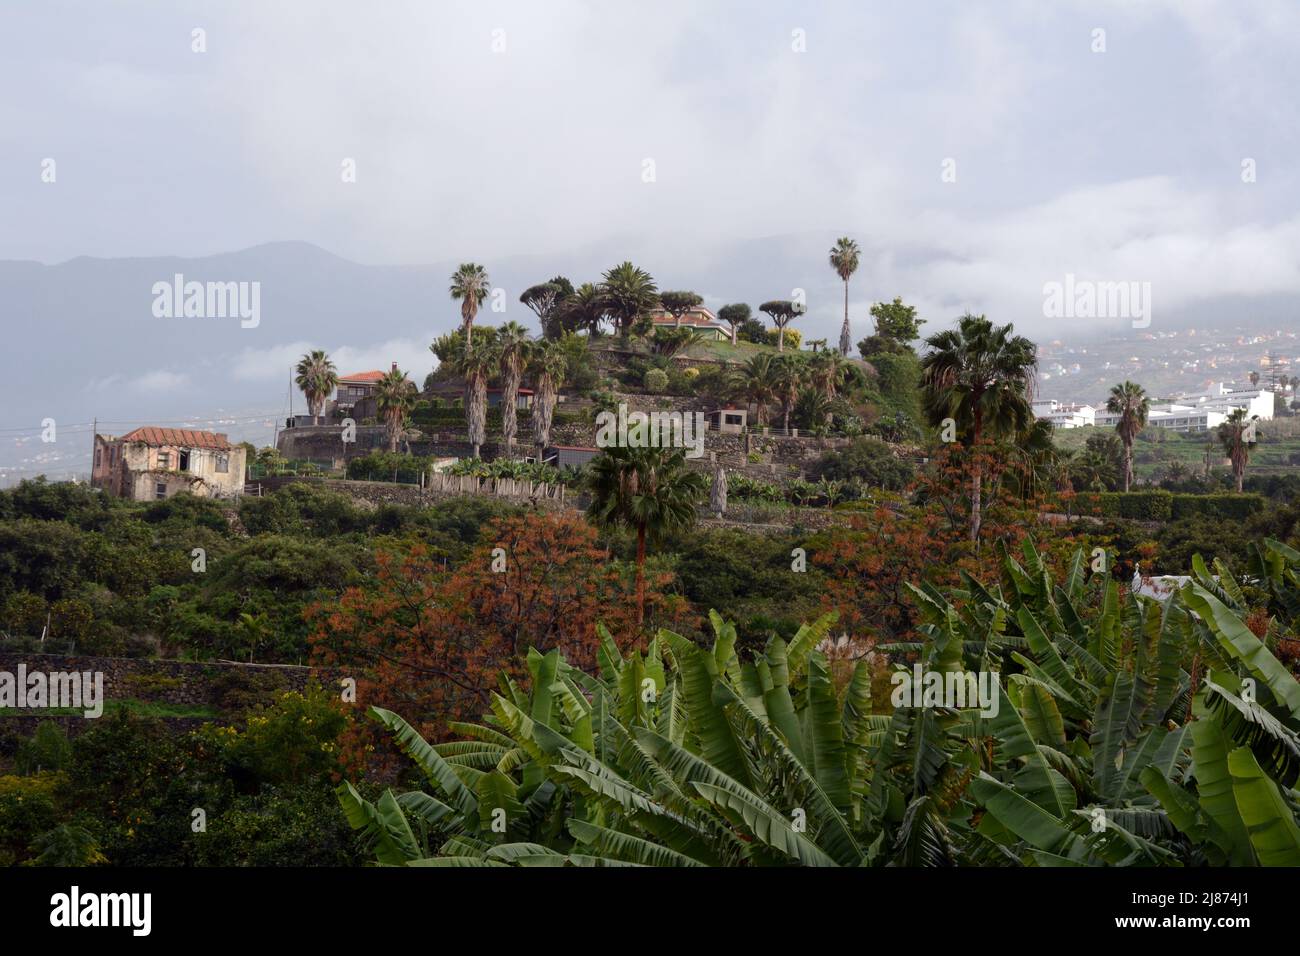 Finca española, o plantación agrícola, cerca del pueblo de Los Realejos, en la isla de Tenerife, Islas Canarias, España. Foto de stock